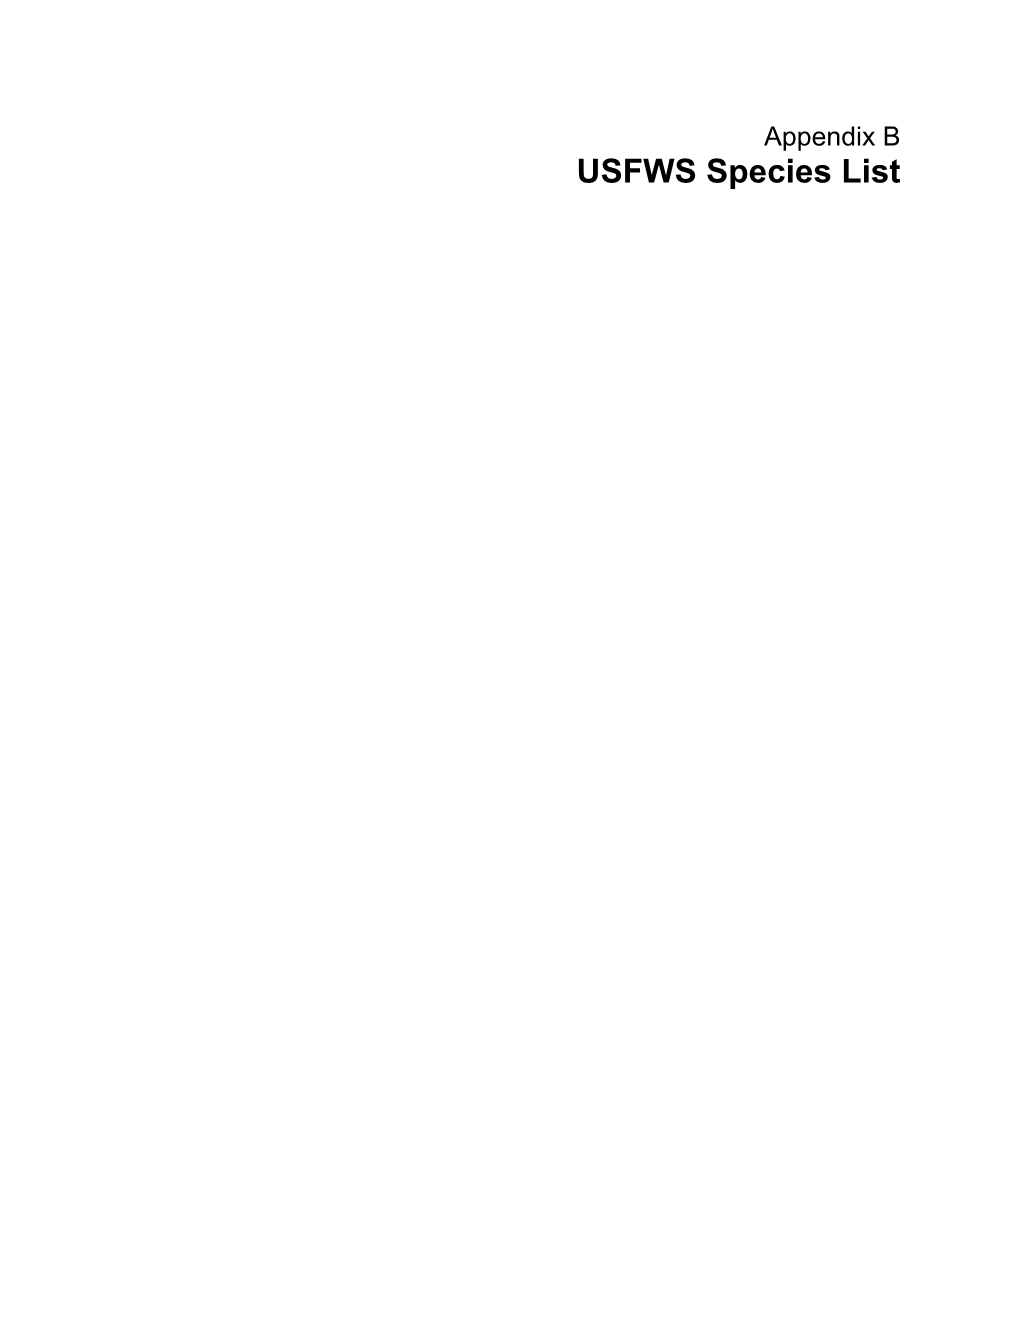 USFWS Species List